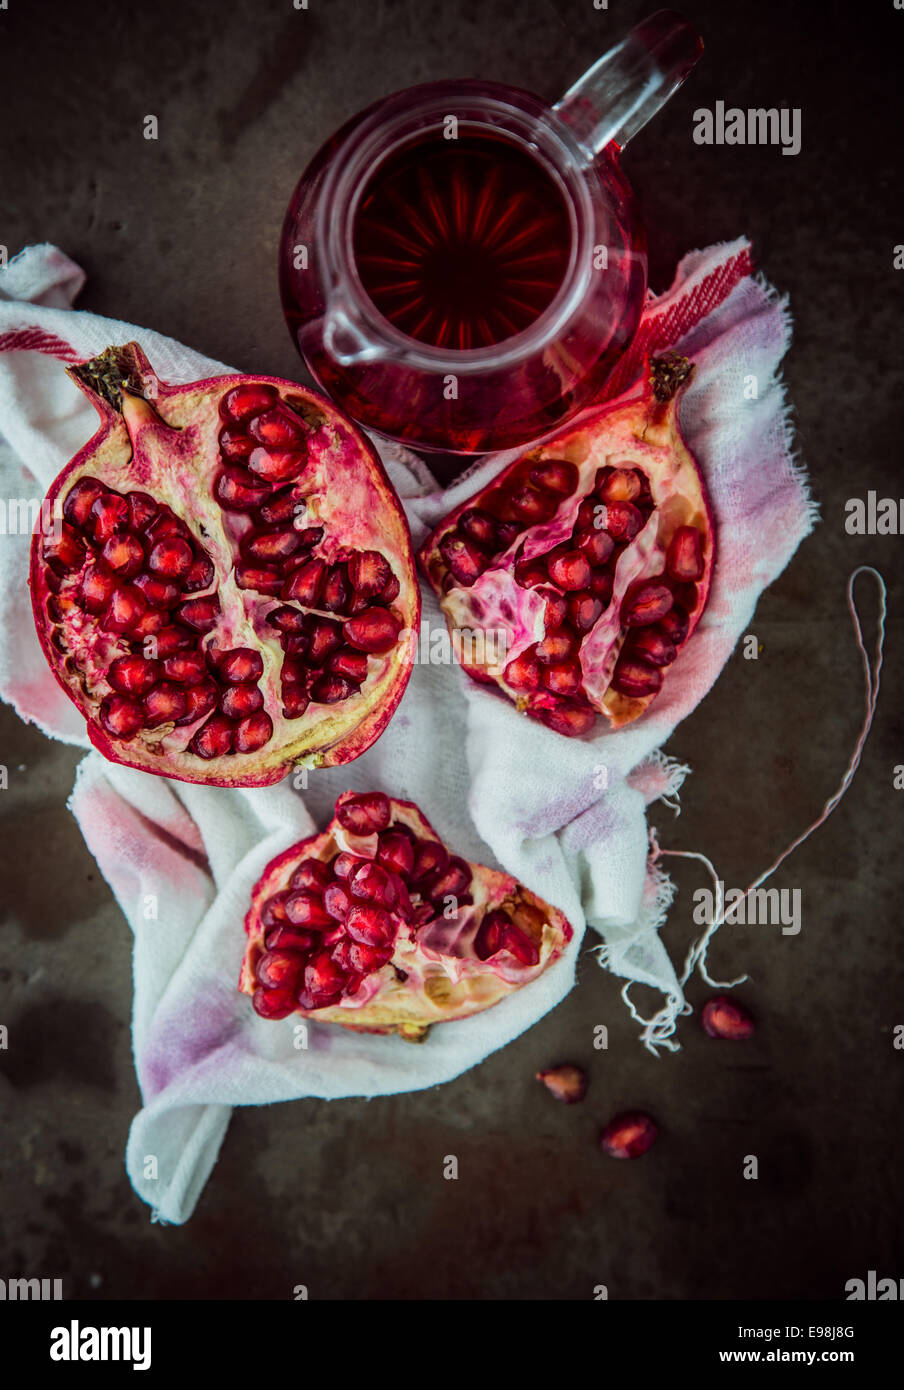 Hacer fresco jugo de granada con una vista aérea de una fractura abierta mostrando la fruta roja madura semillas sobre una muselina manchada con una jarra de zumo recién preparado junto con Foto de stock